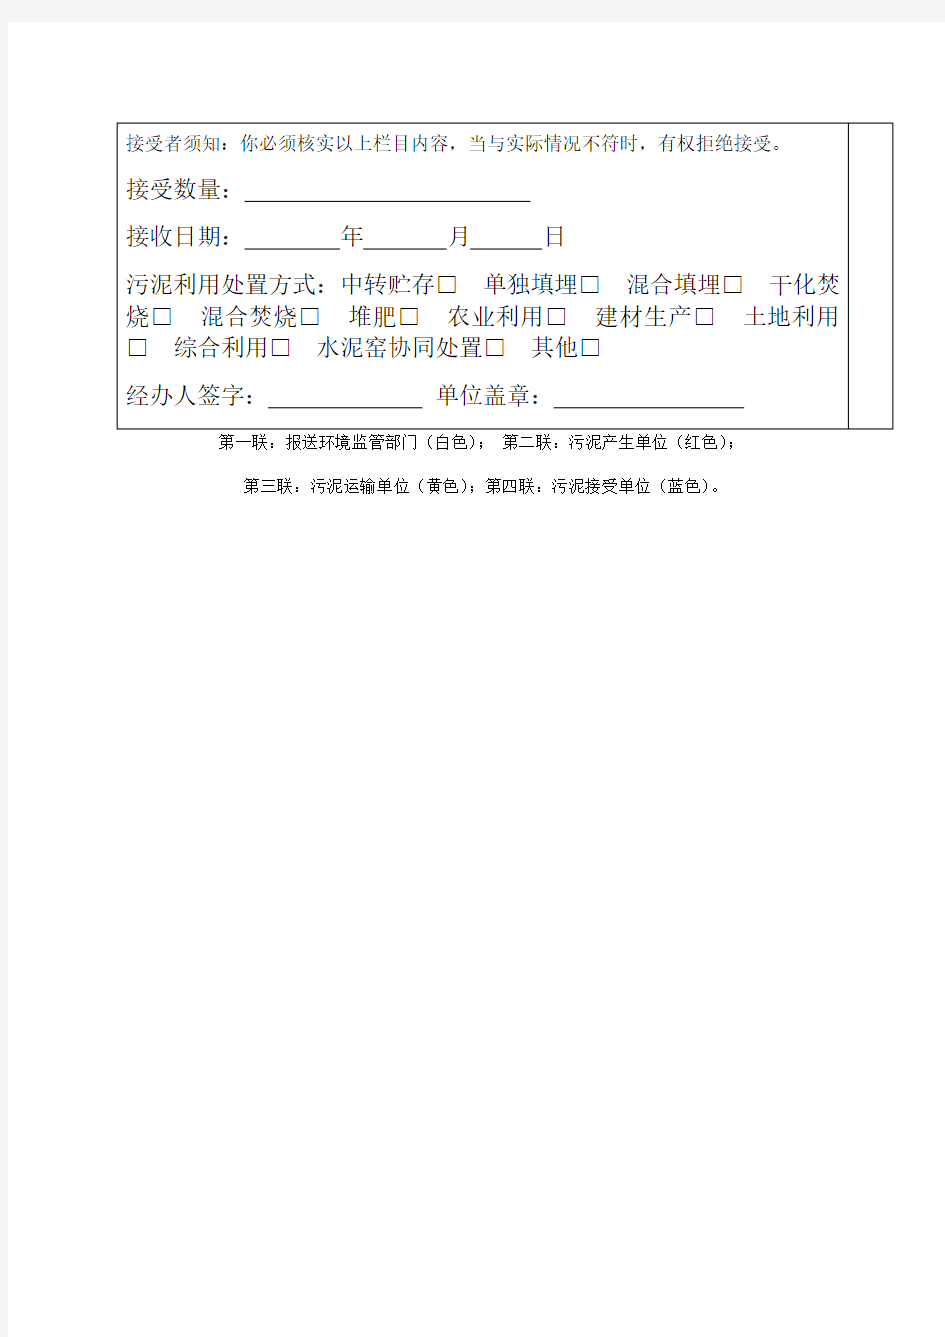 湖北省城镇污水处理厂污泥转移联单